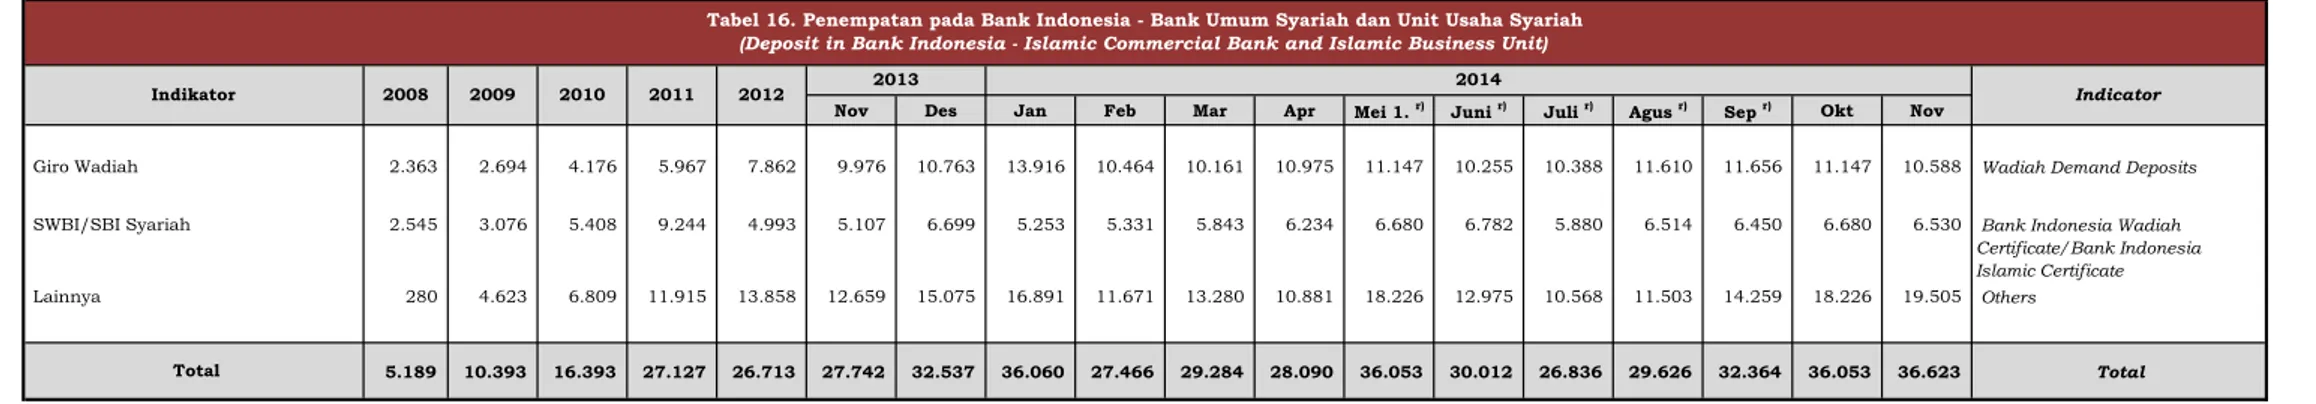 Tabel 16. Penempatan pada Bank Indonesia - Bank Umum Syariah dan Unit Usaha Syariah  (Deposit in Bank Indonesia - Islamic Commercial Bank and Islamic Business Unit)